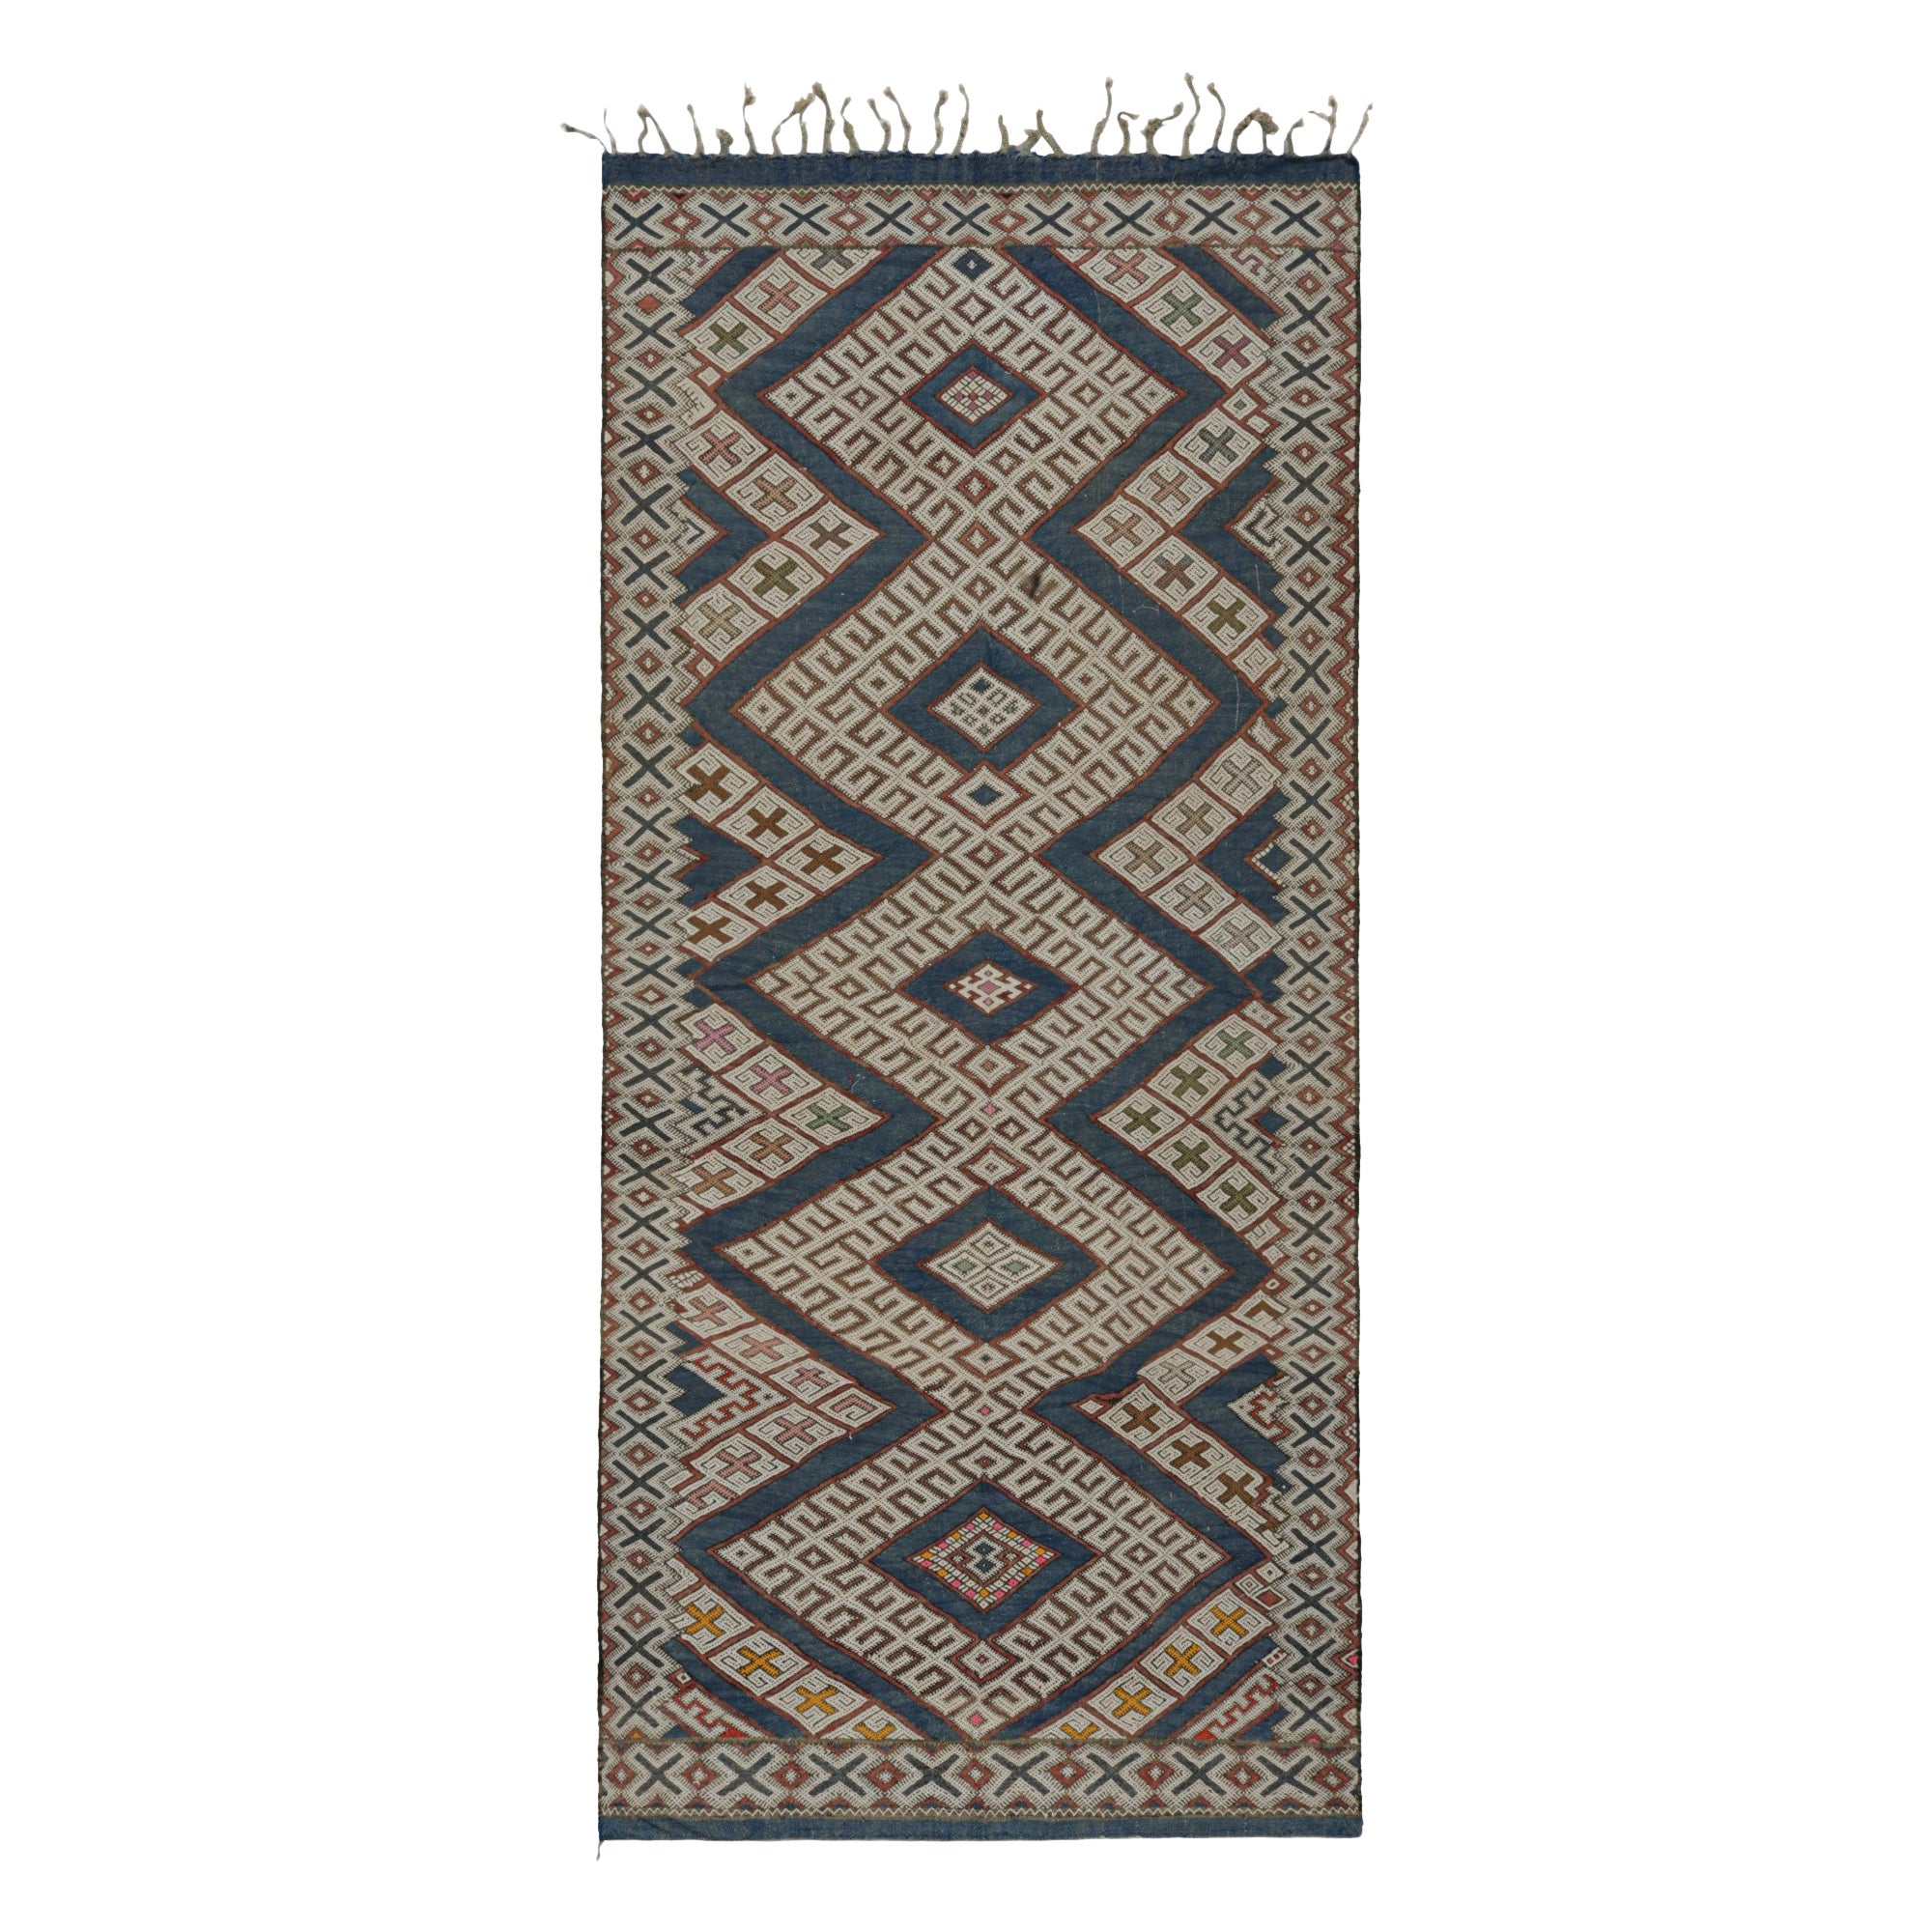 Tapis Kilim marocain Zayane, avec motifs géométriques, de Rug & Kilim